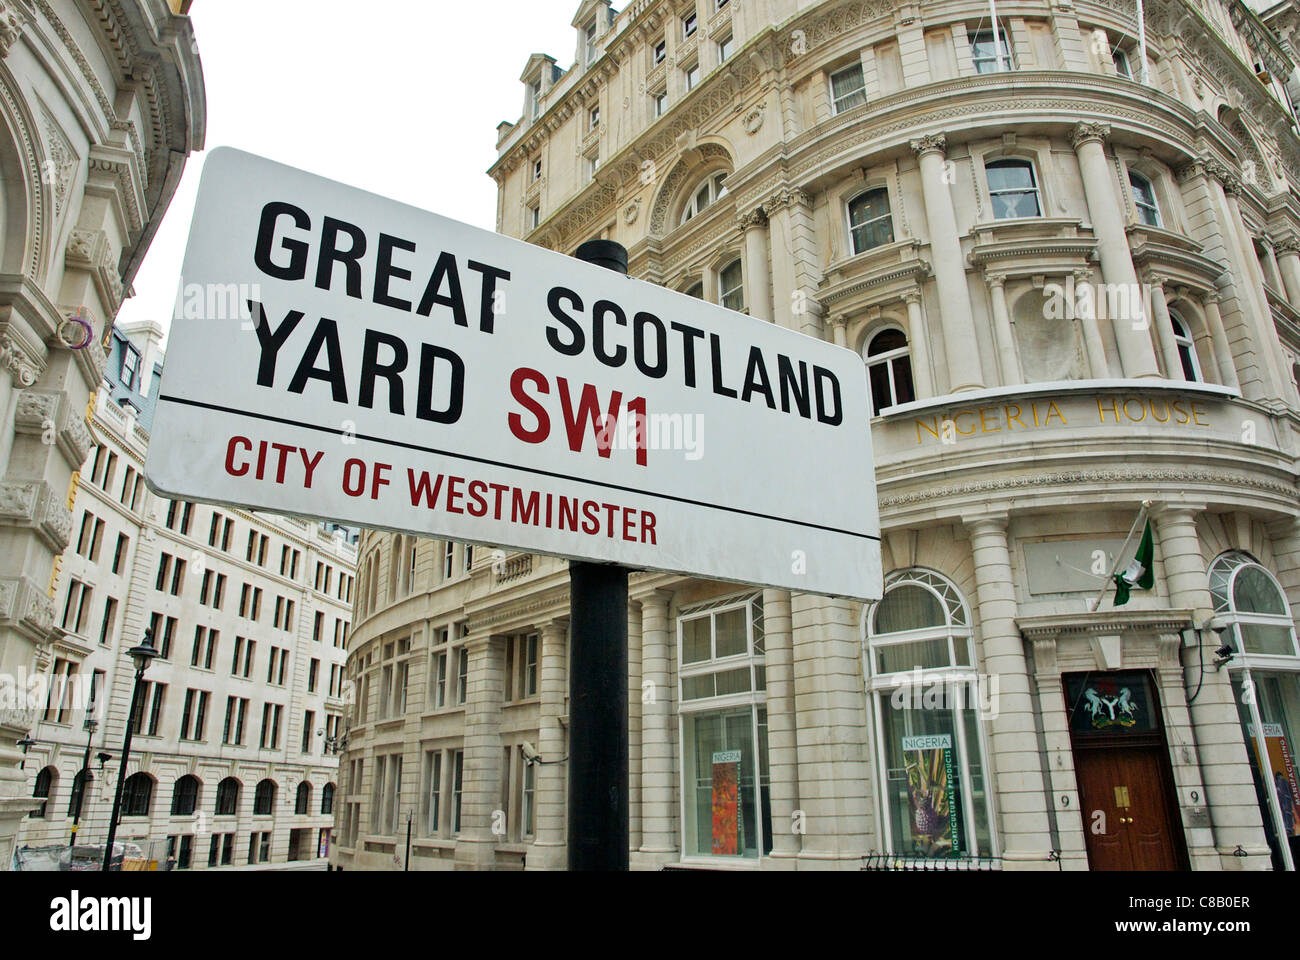 Great Scotland Yard SW1 le nom de la rue, Londres Banque D'Images